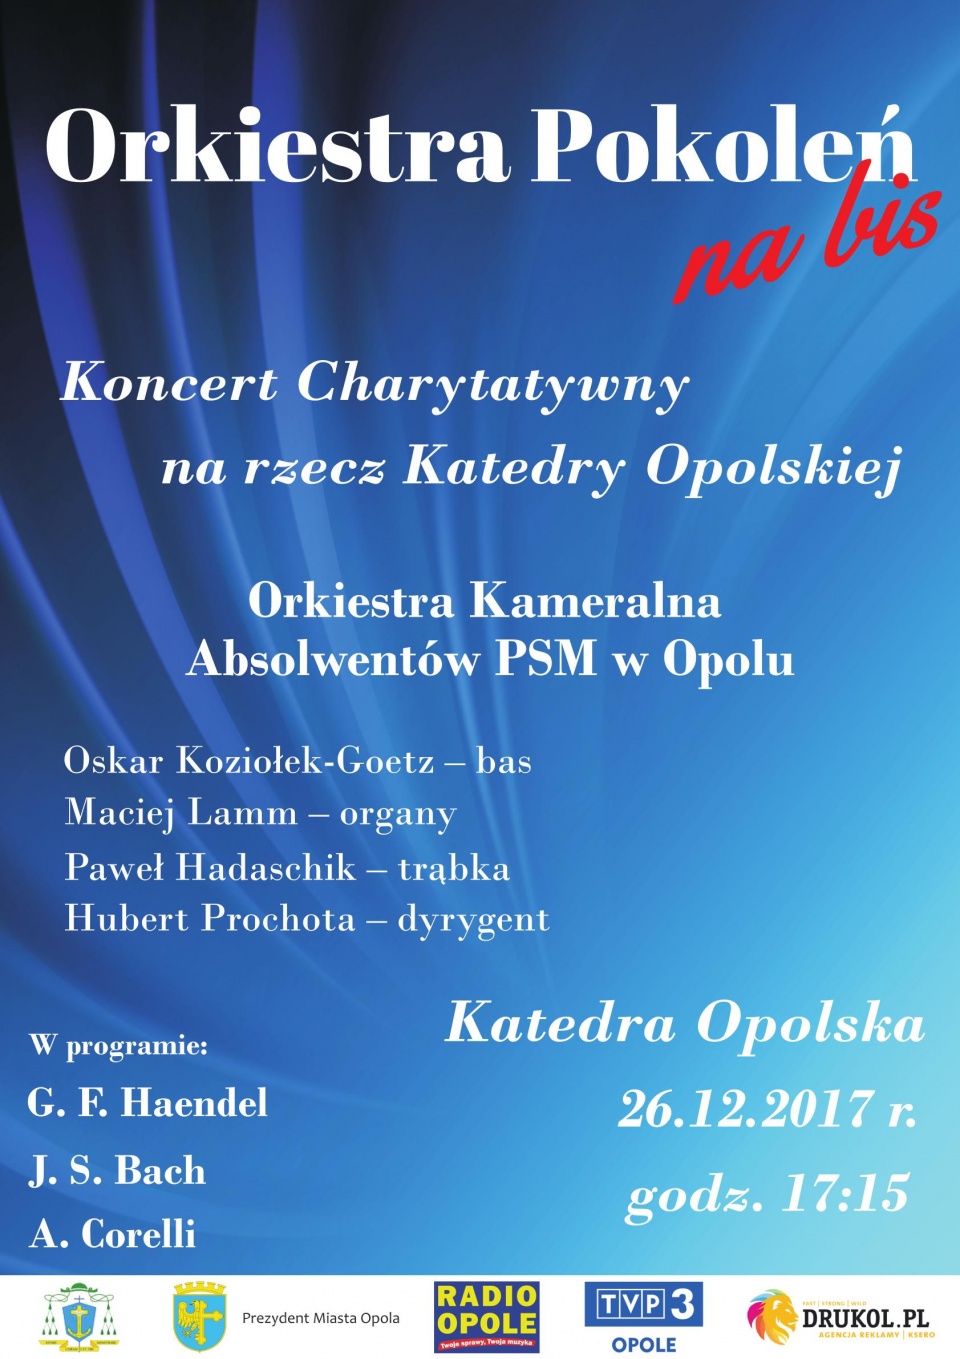 Koncert "Orkiestra Pokoleń na bis" na rzecz Katedry Opolskiej już we wtorek